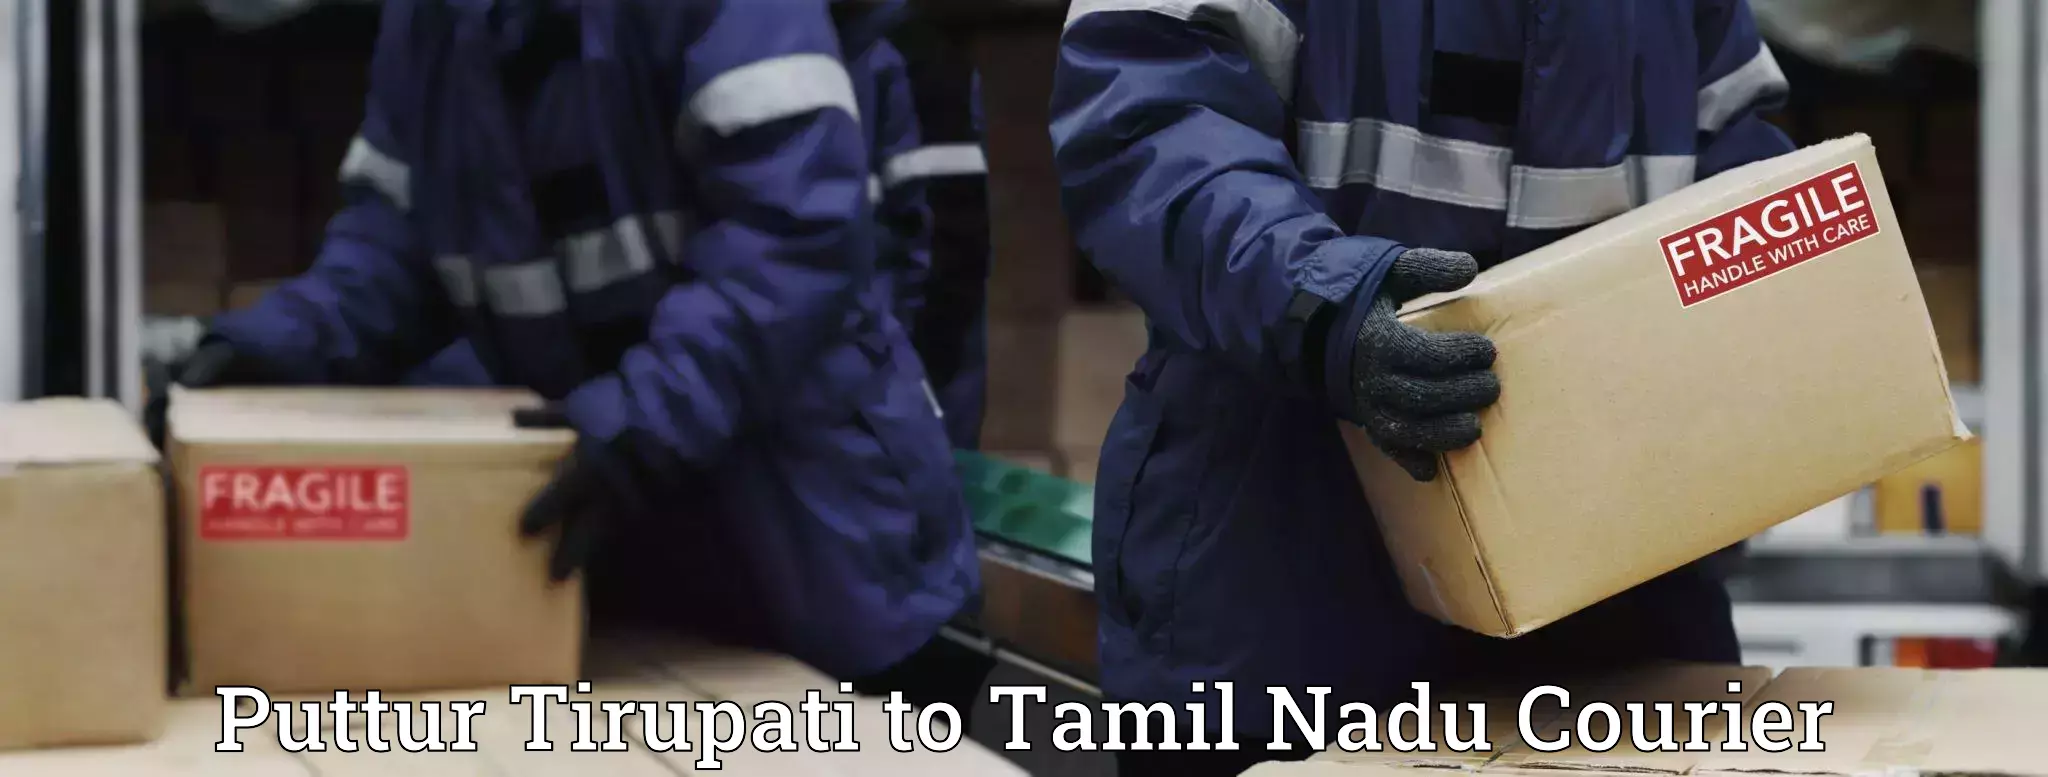 Budget-friendly shipping in Puttur Tirupati to Tamil Nadu